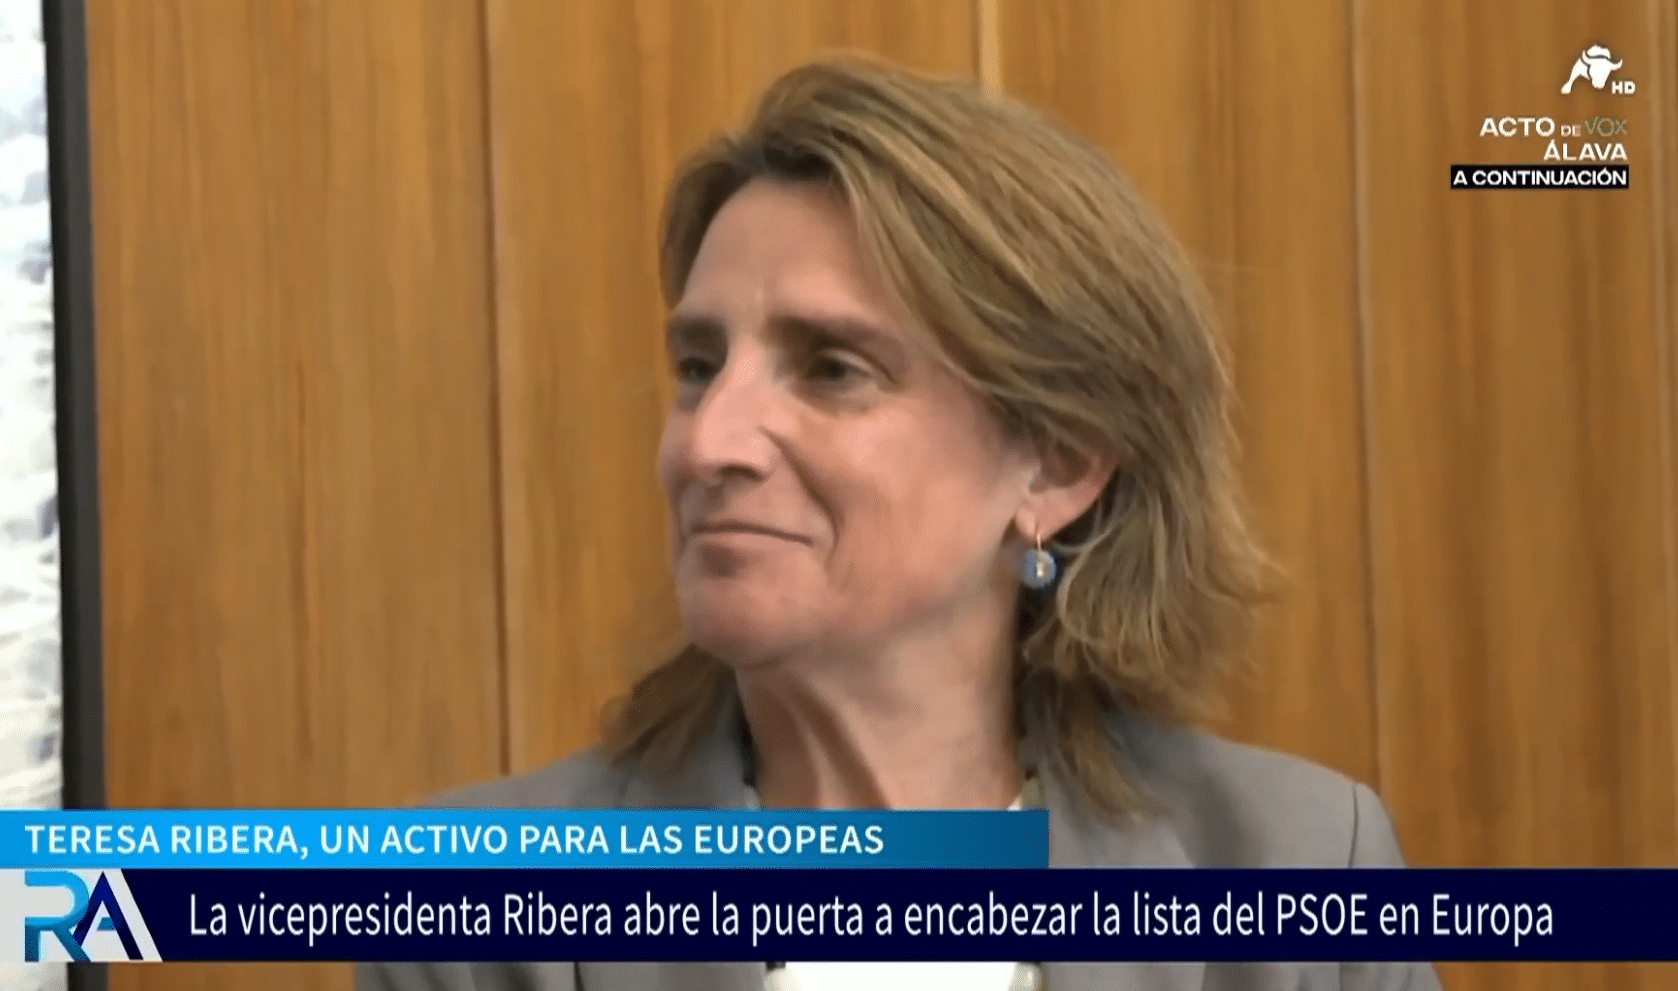  Teresa Ribera pasa de colocar a su marido en la CNMV a postularse como candidata del PSOE en Europa